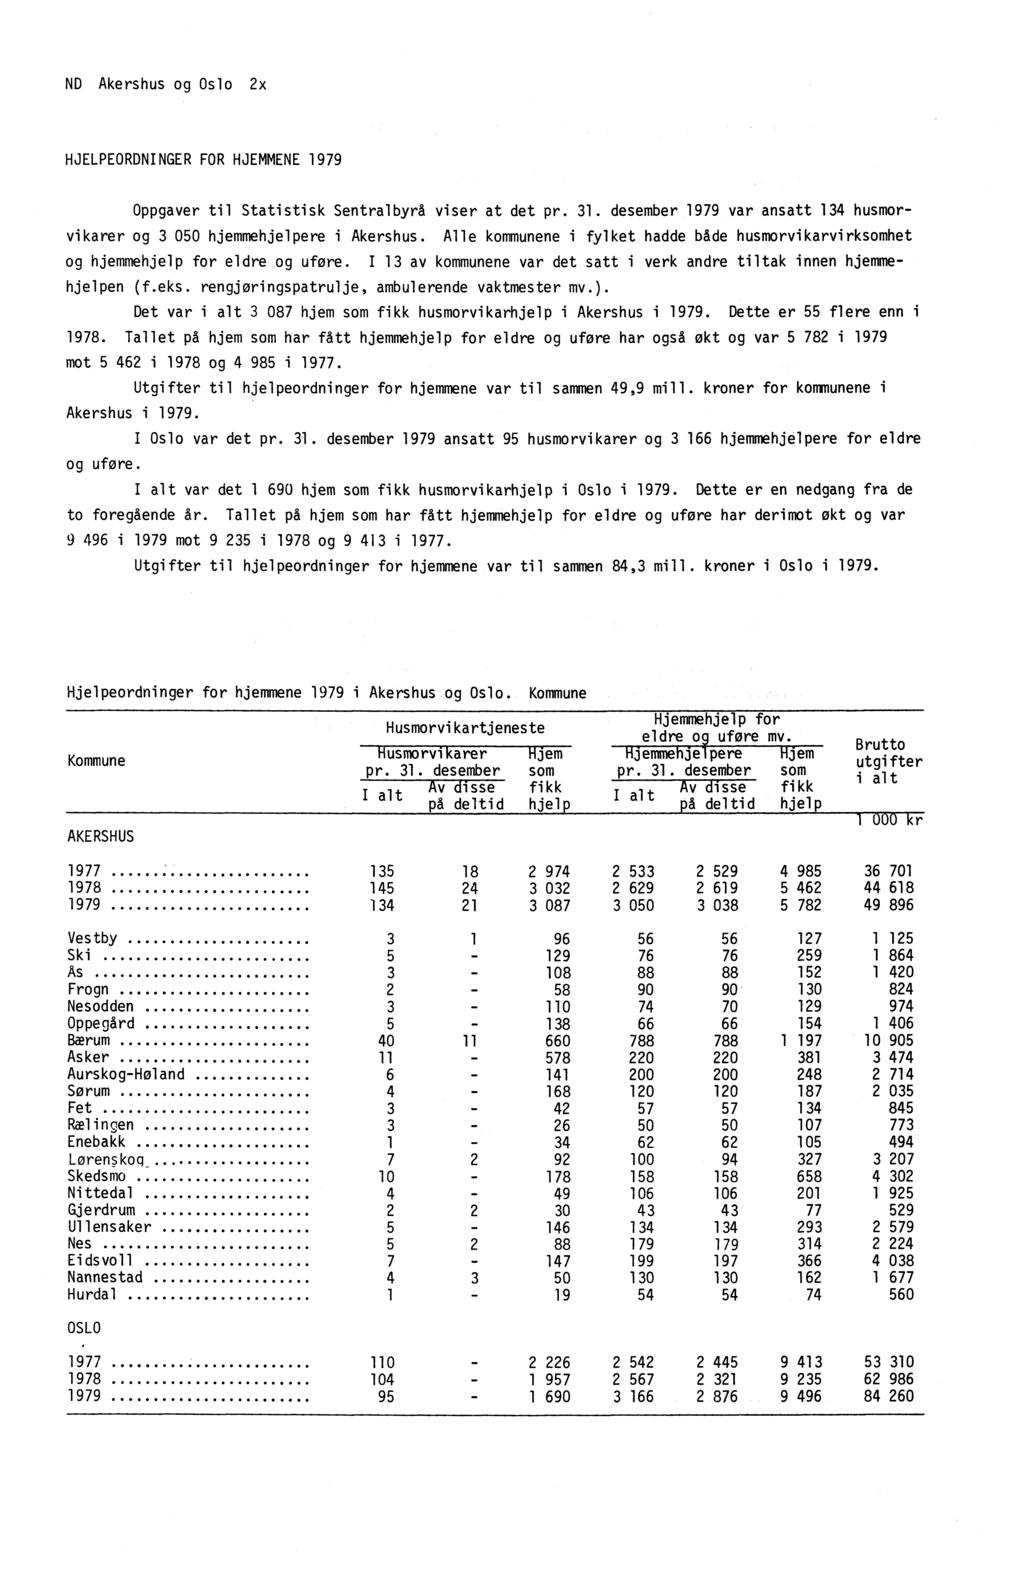 ND Akershus og Oslo 2x HJELPEORDNINGER FOR HJEMMENE 1979 Oppgaver til Statistisk Sentralbyrå viser at det pr. 31. desember 1979 var ansatt 134 husmorvikarer og 3 050 hjemmehjelpere i Akershus.